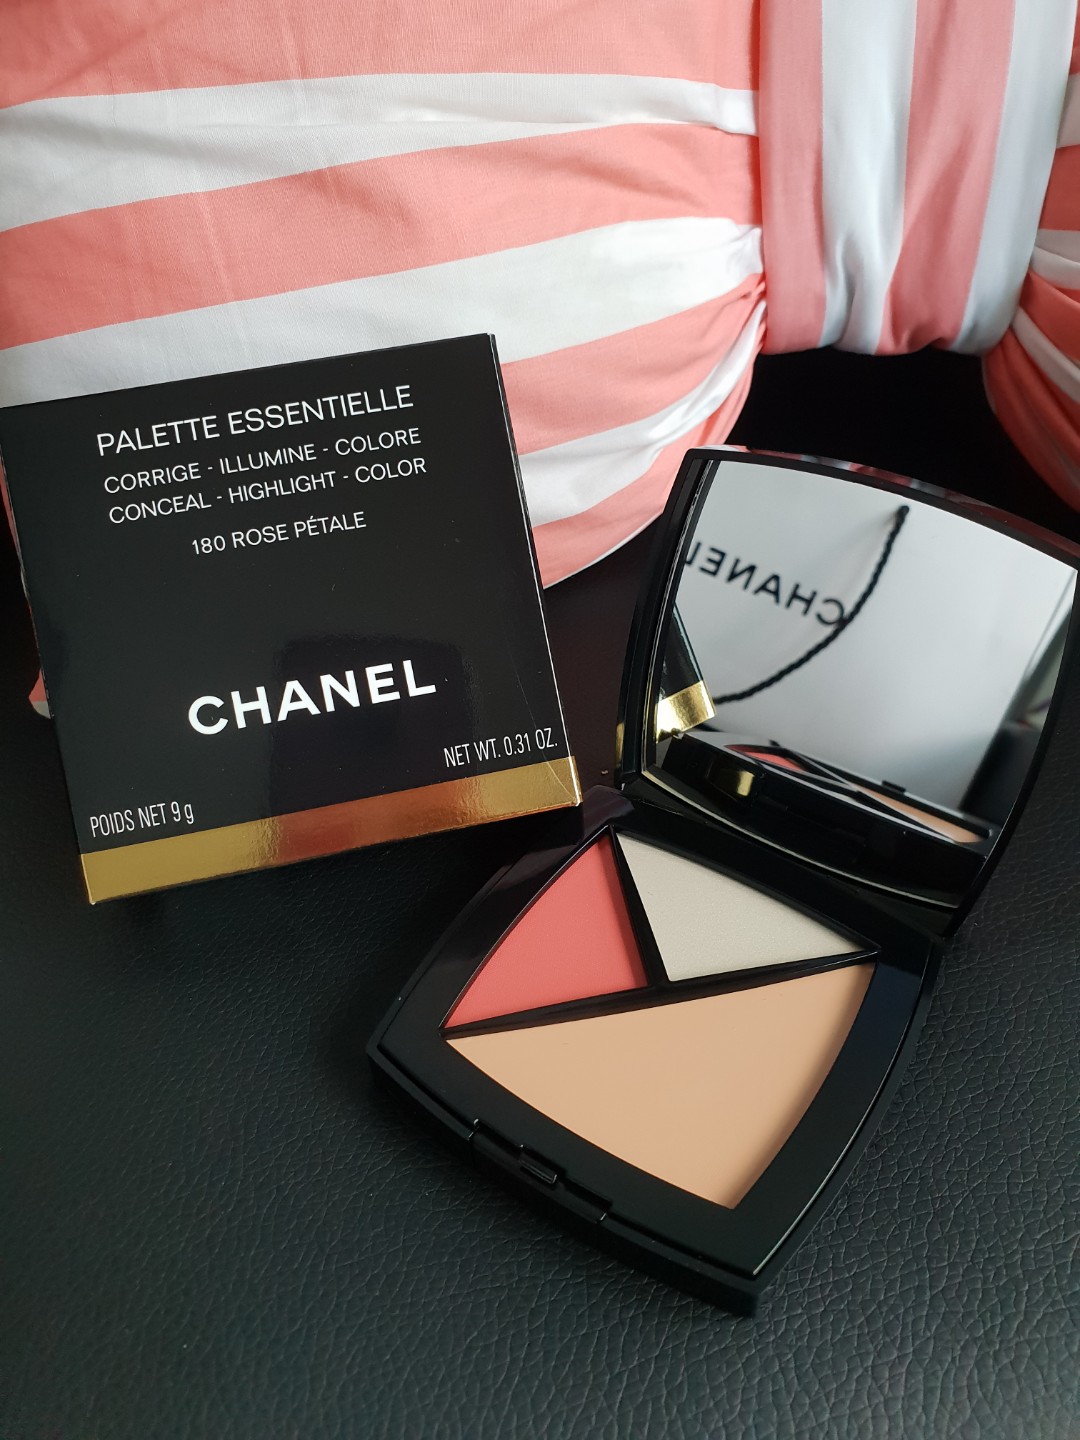 BNWB Chanel Palette Essentielle (180 Rose Petale), Beauty